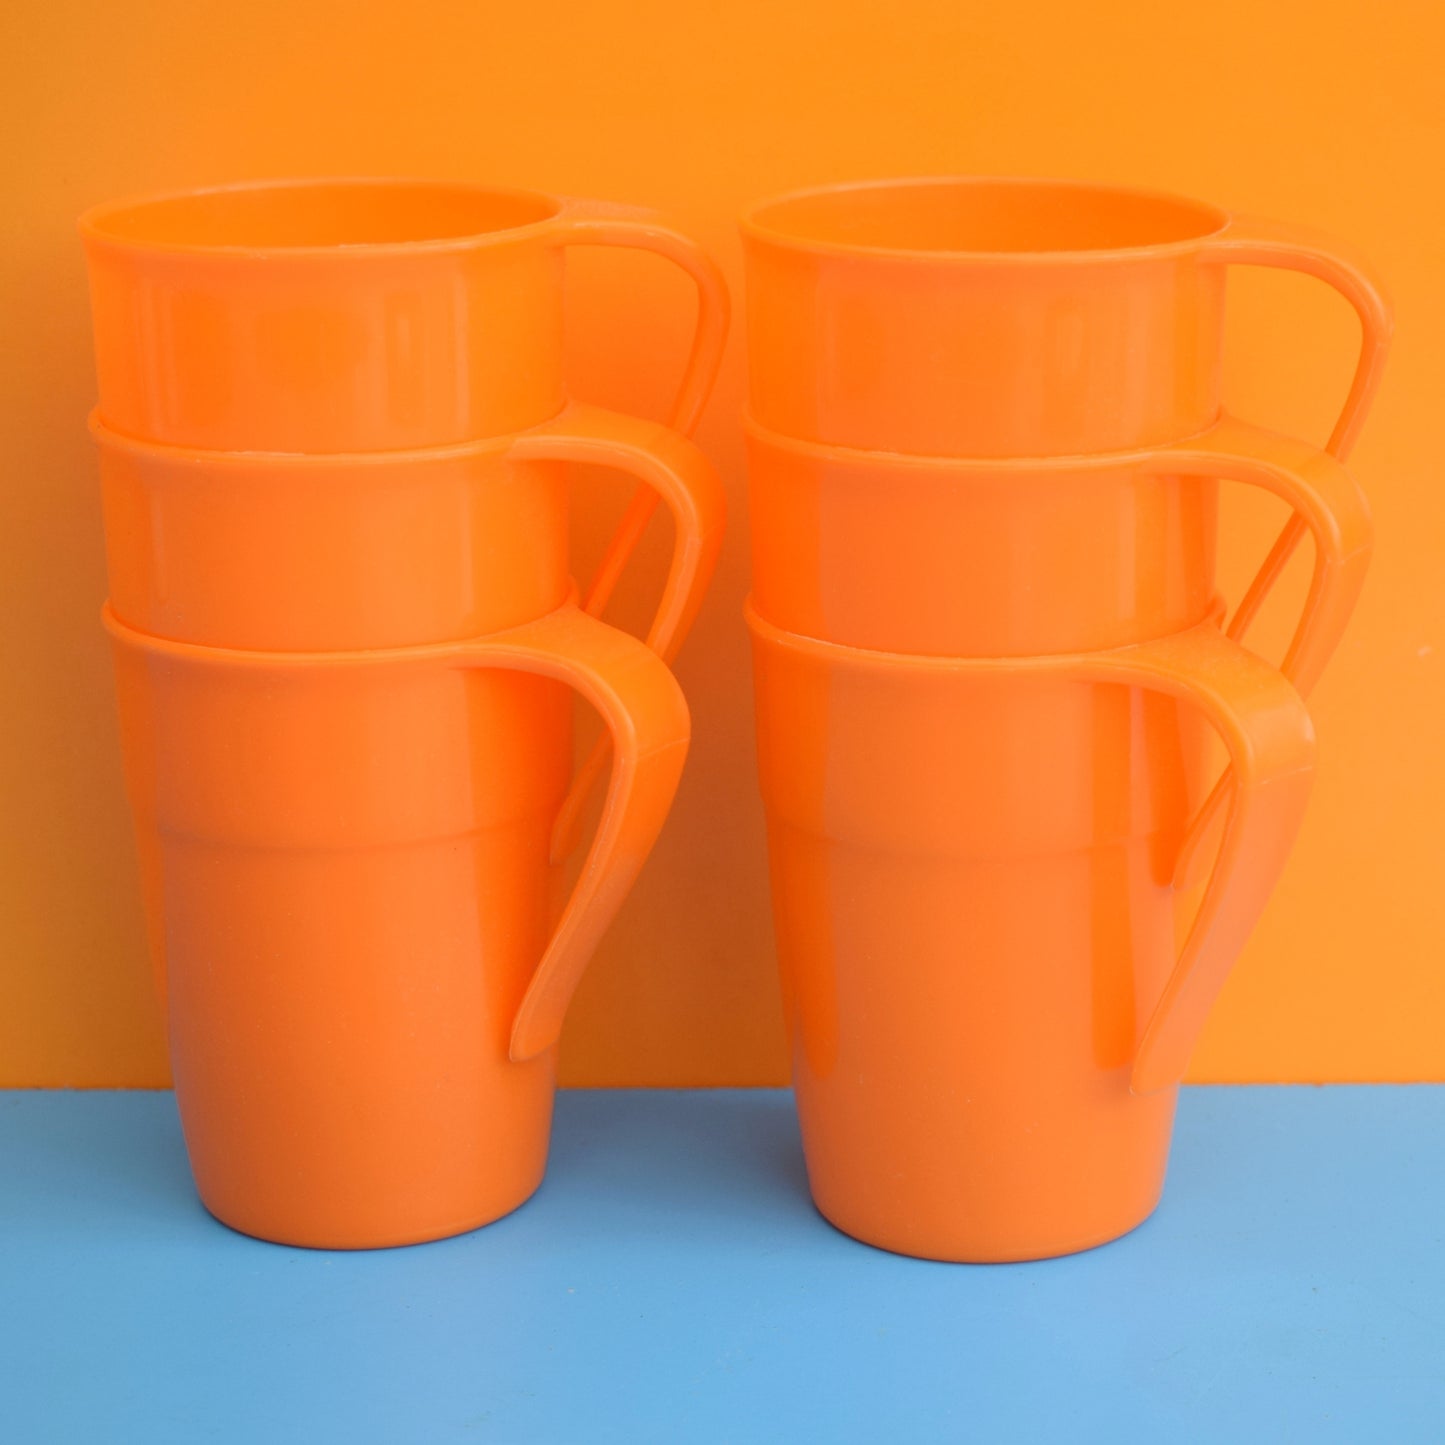 Vintage 1970s Stacking Plastic Mugs -Orange